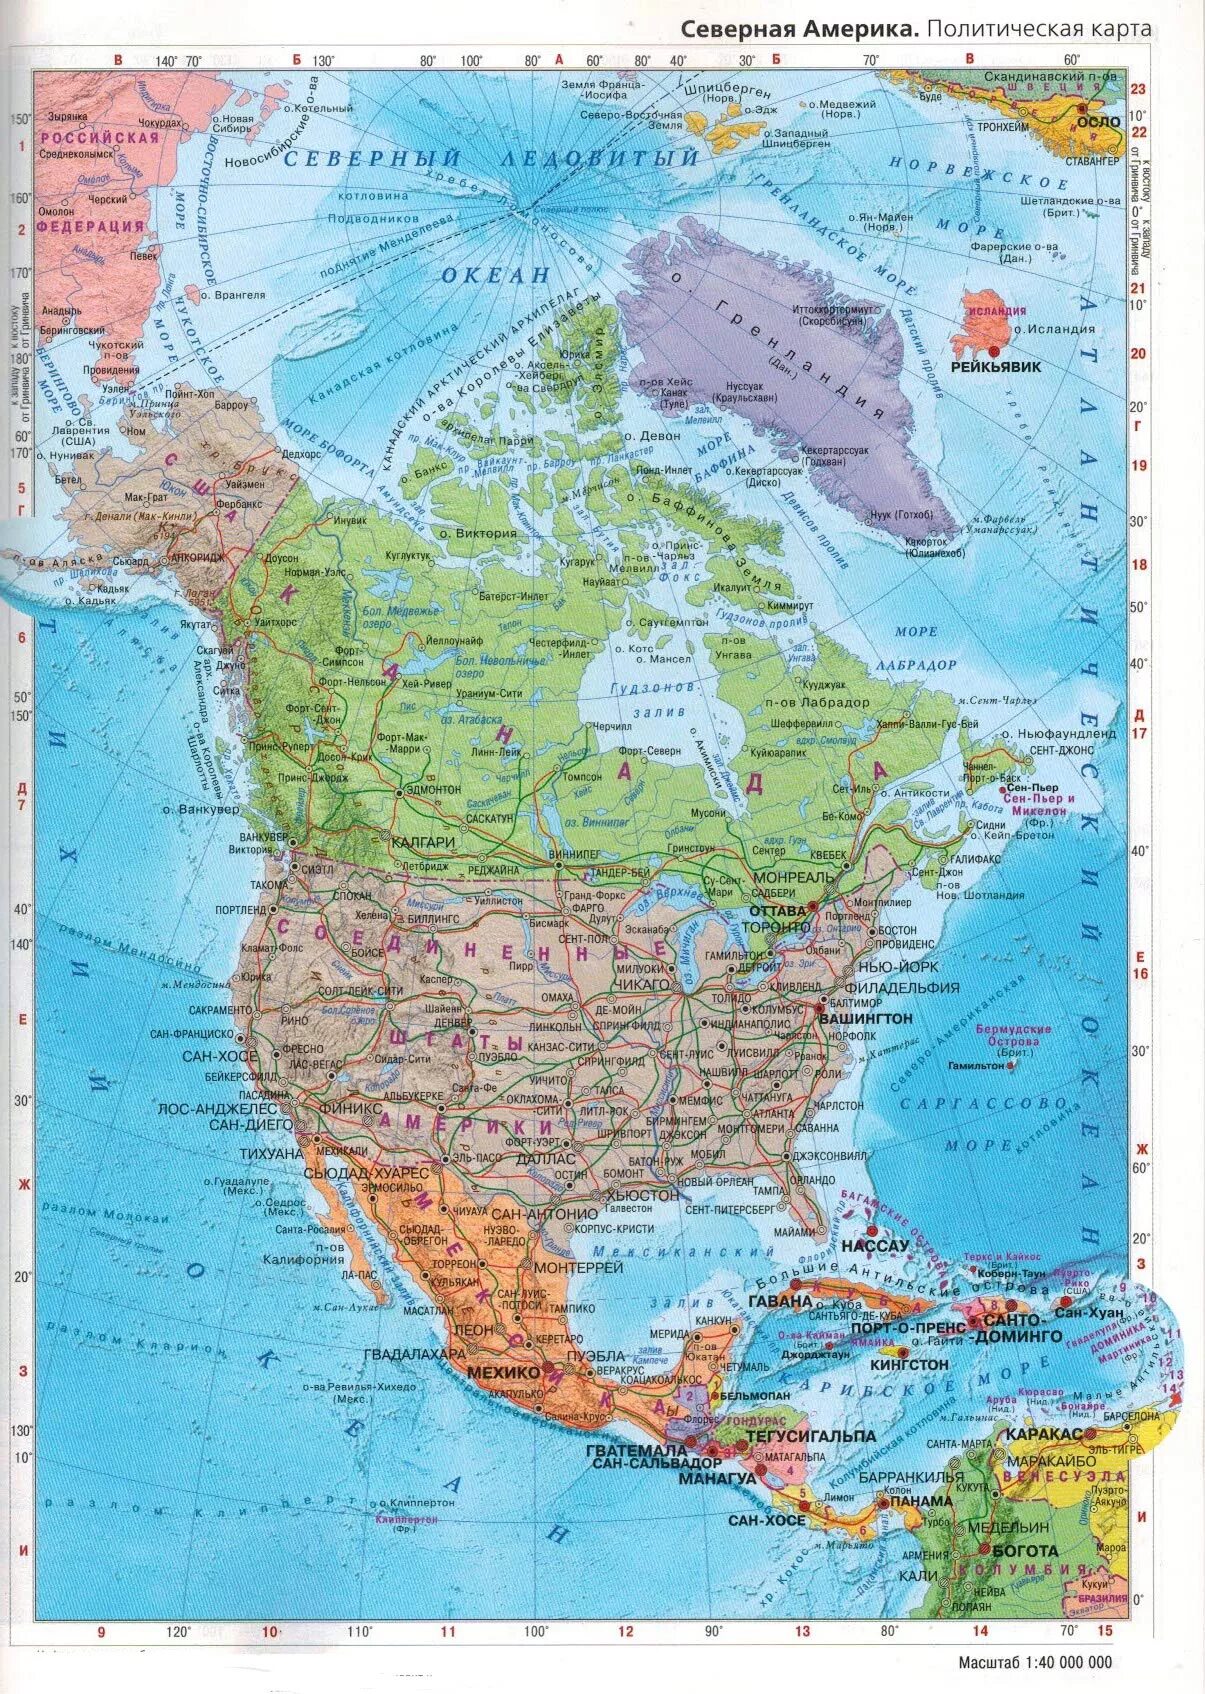 Северная америка географическая карта на русском. Карта Северной Америки географическая. Карта Северной и Южной Америки географическая. Карта Северной Америки географическая на русском. Карта стран Северной Америки на русском языке.